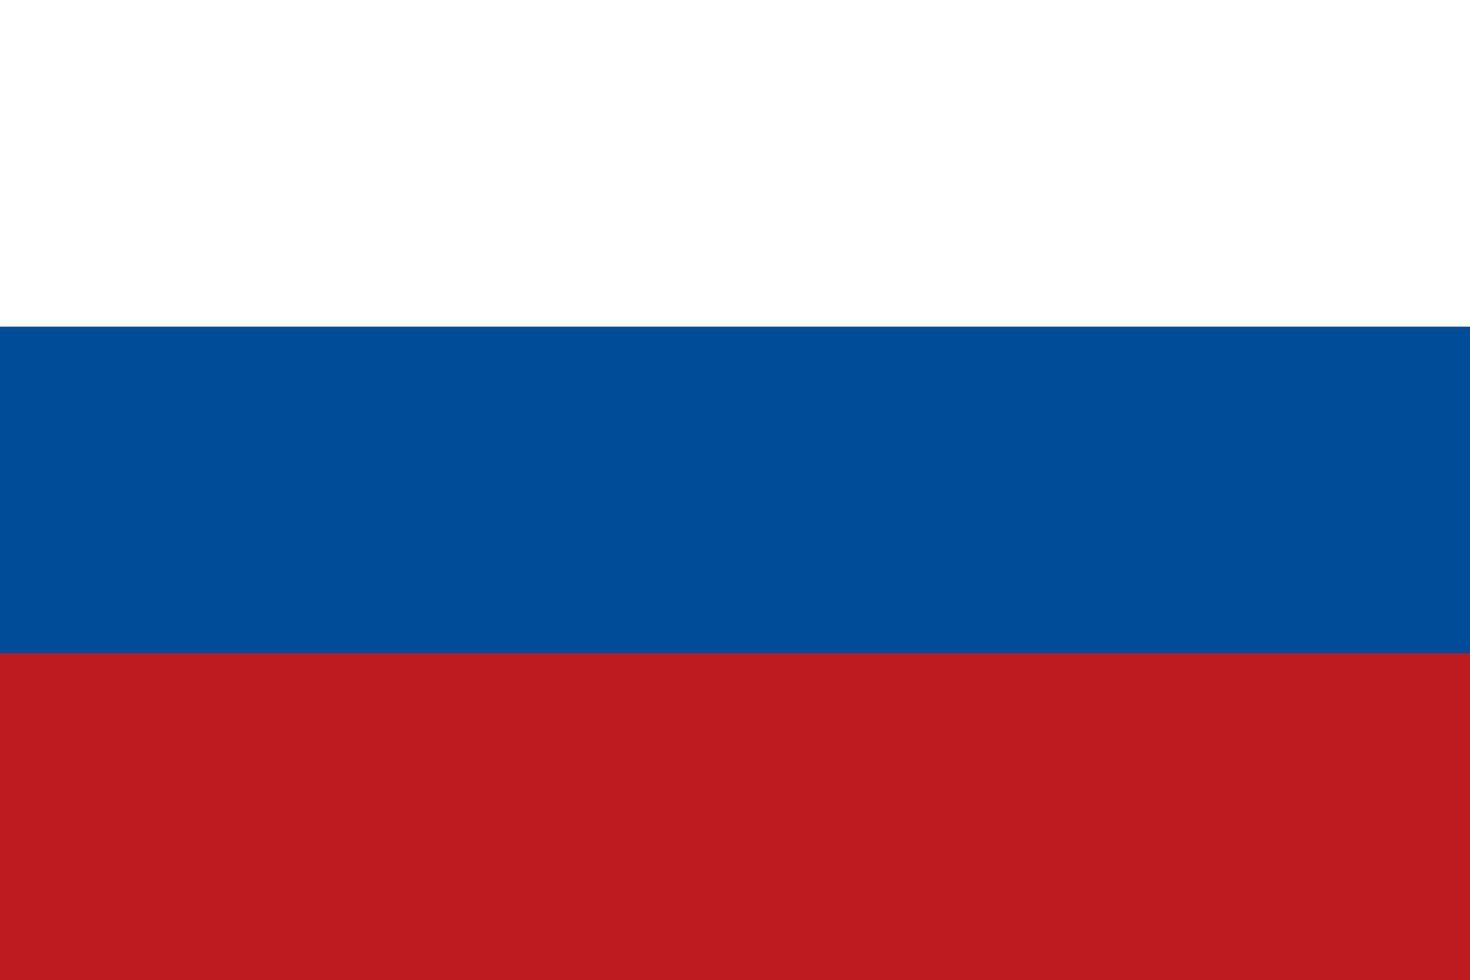 abstrakt vit, blå och röd färgbakgrund, som Rysslands flagga. vektor illustration.